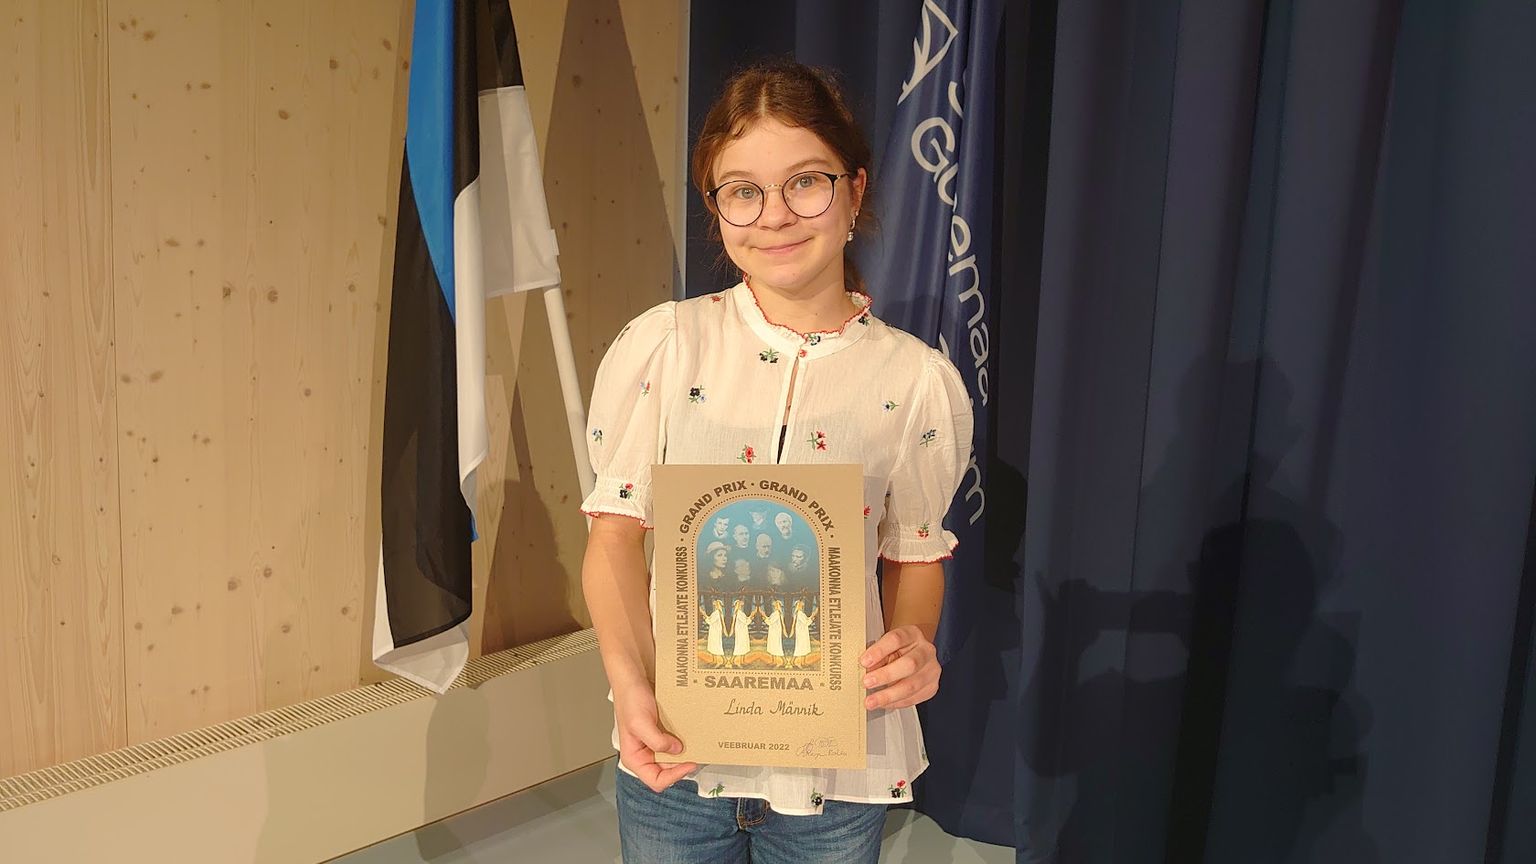 Keskmise vanuseastme grand prix’ võitja Linda Männik Kuressaare Nooruse koolist (juhendaja Anu Liik).